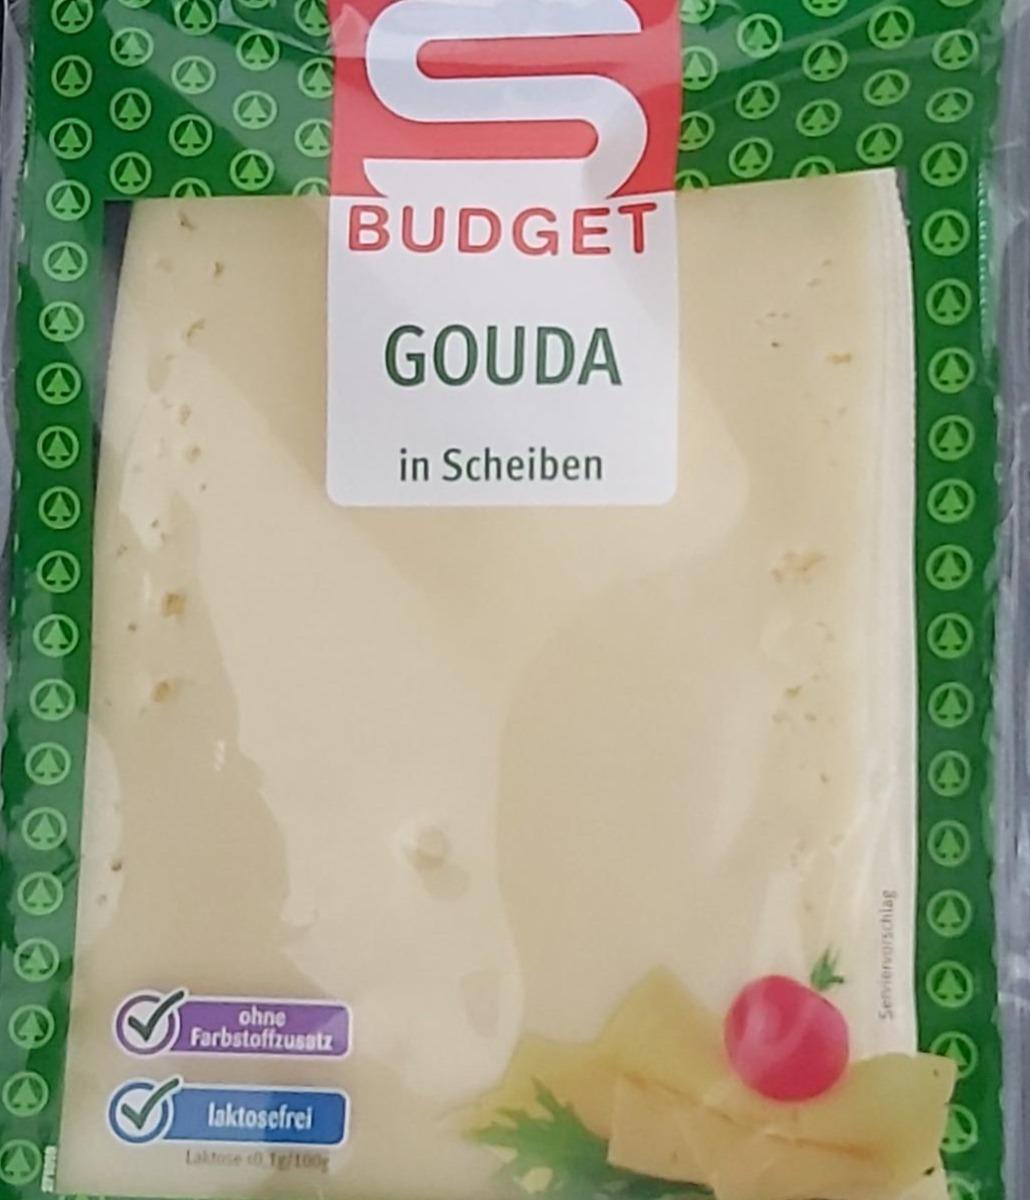 Fotografie - Gouda in Scheiben S Budget